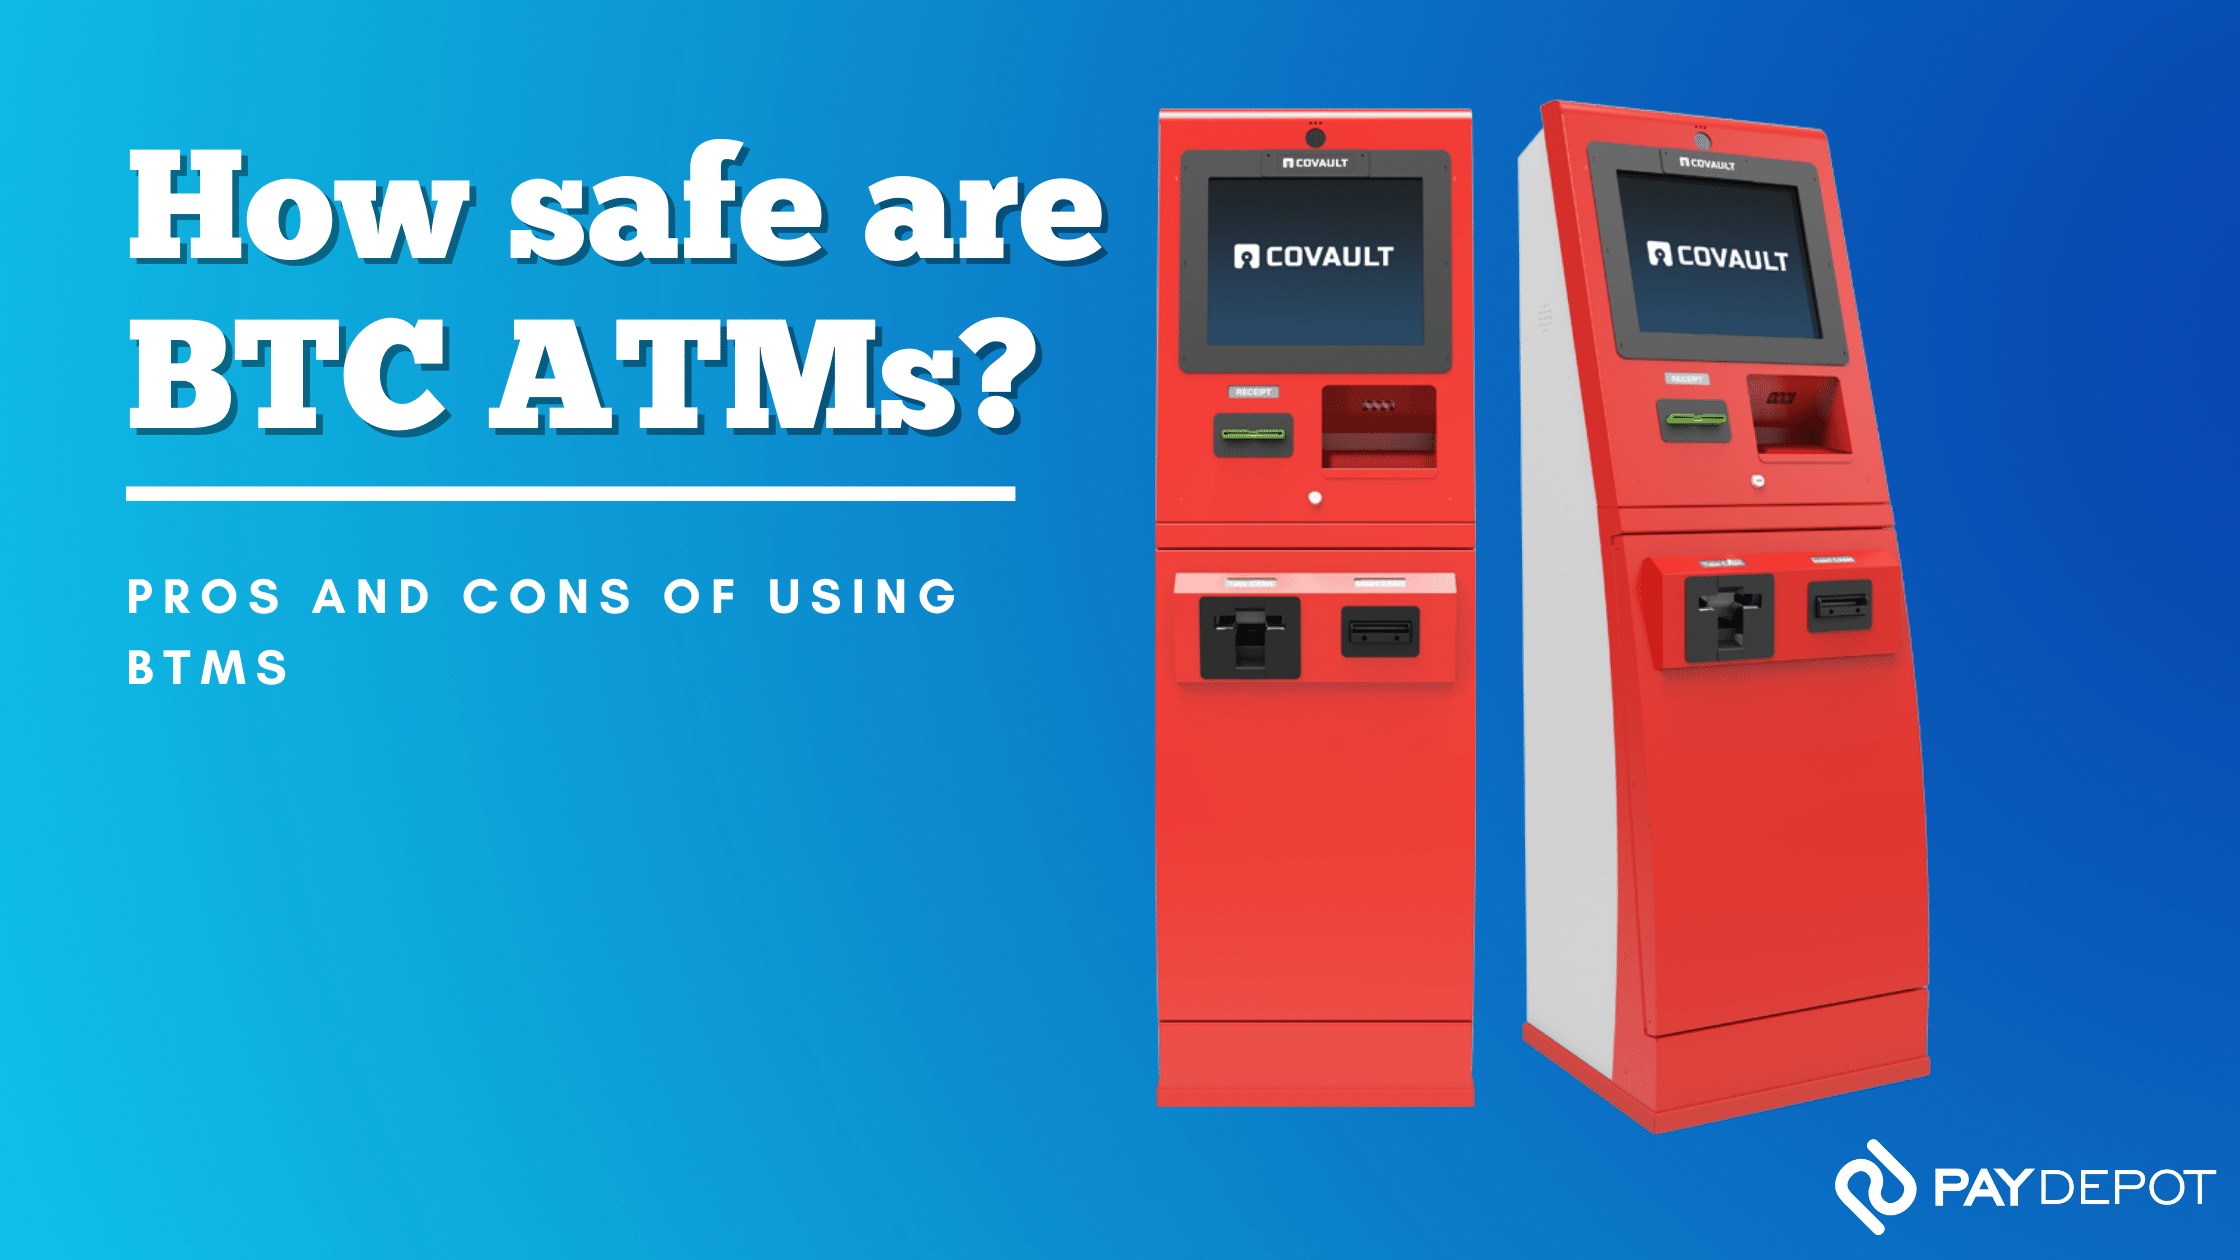 How safe are BTC ATMs?